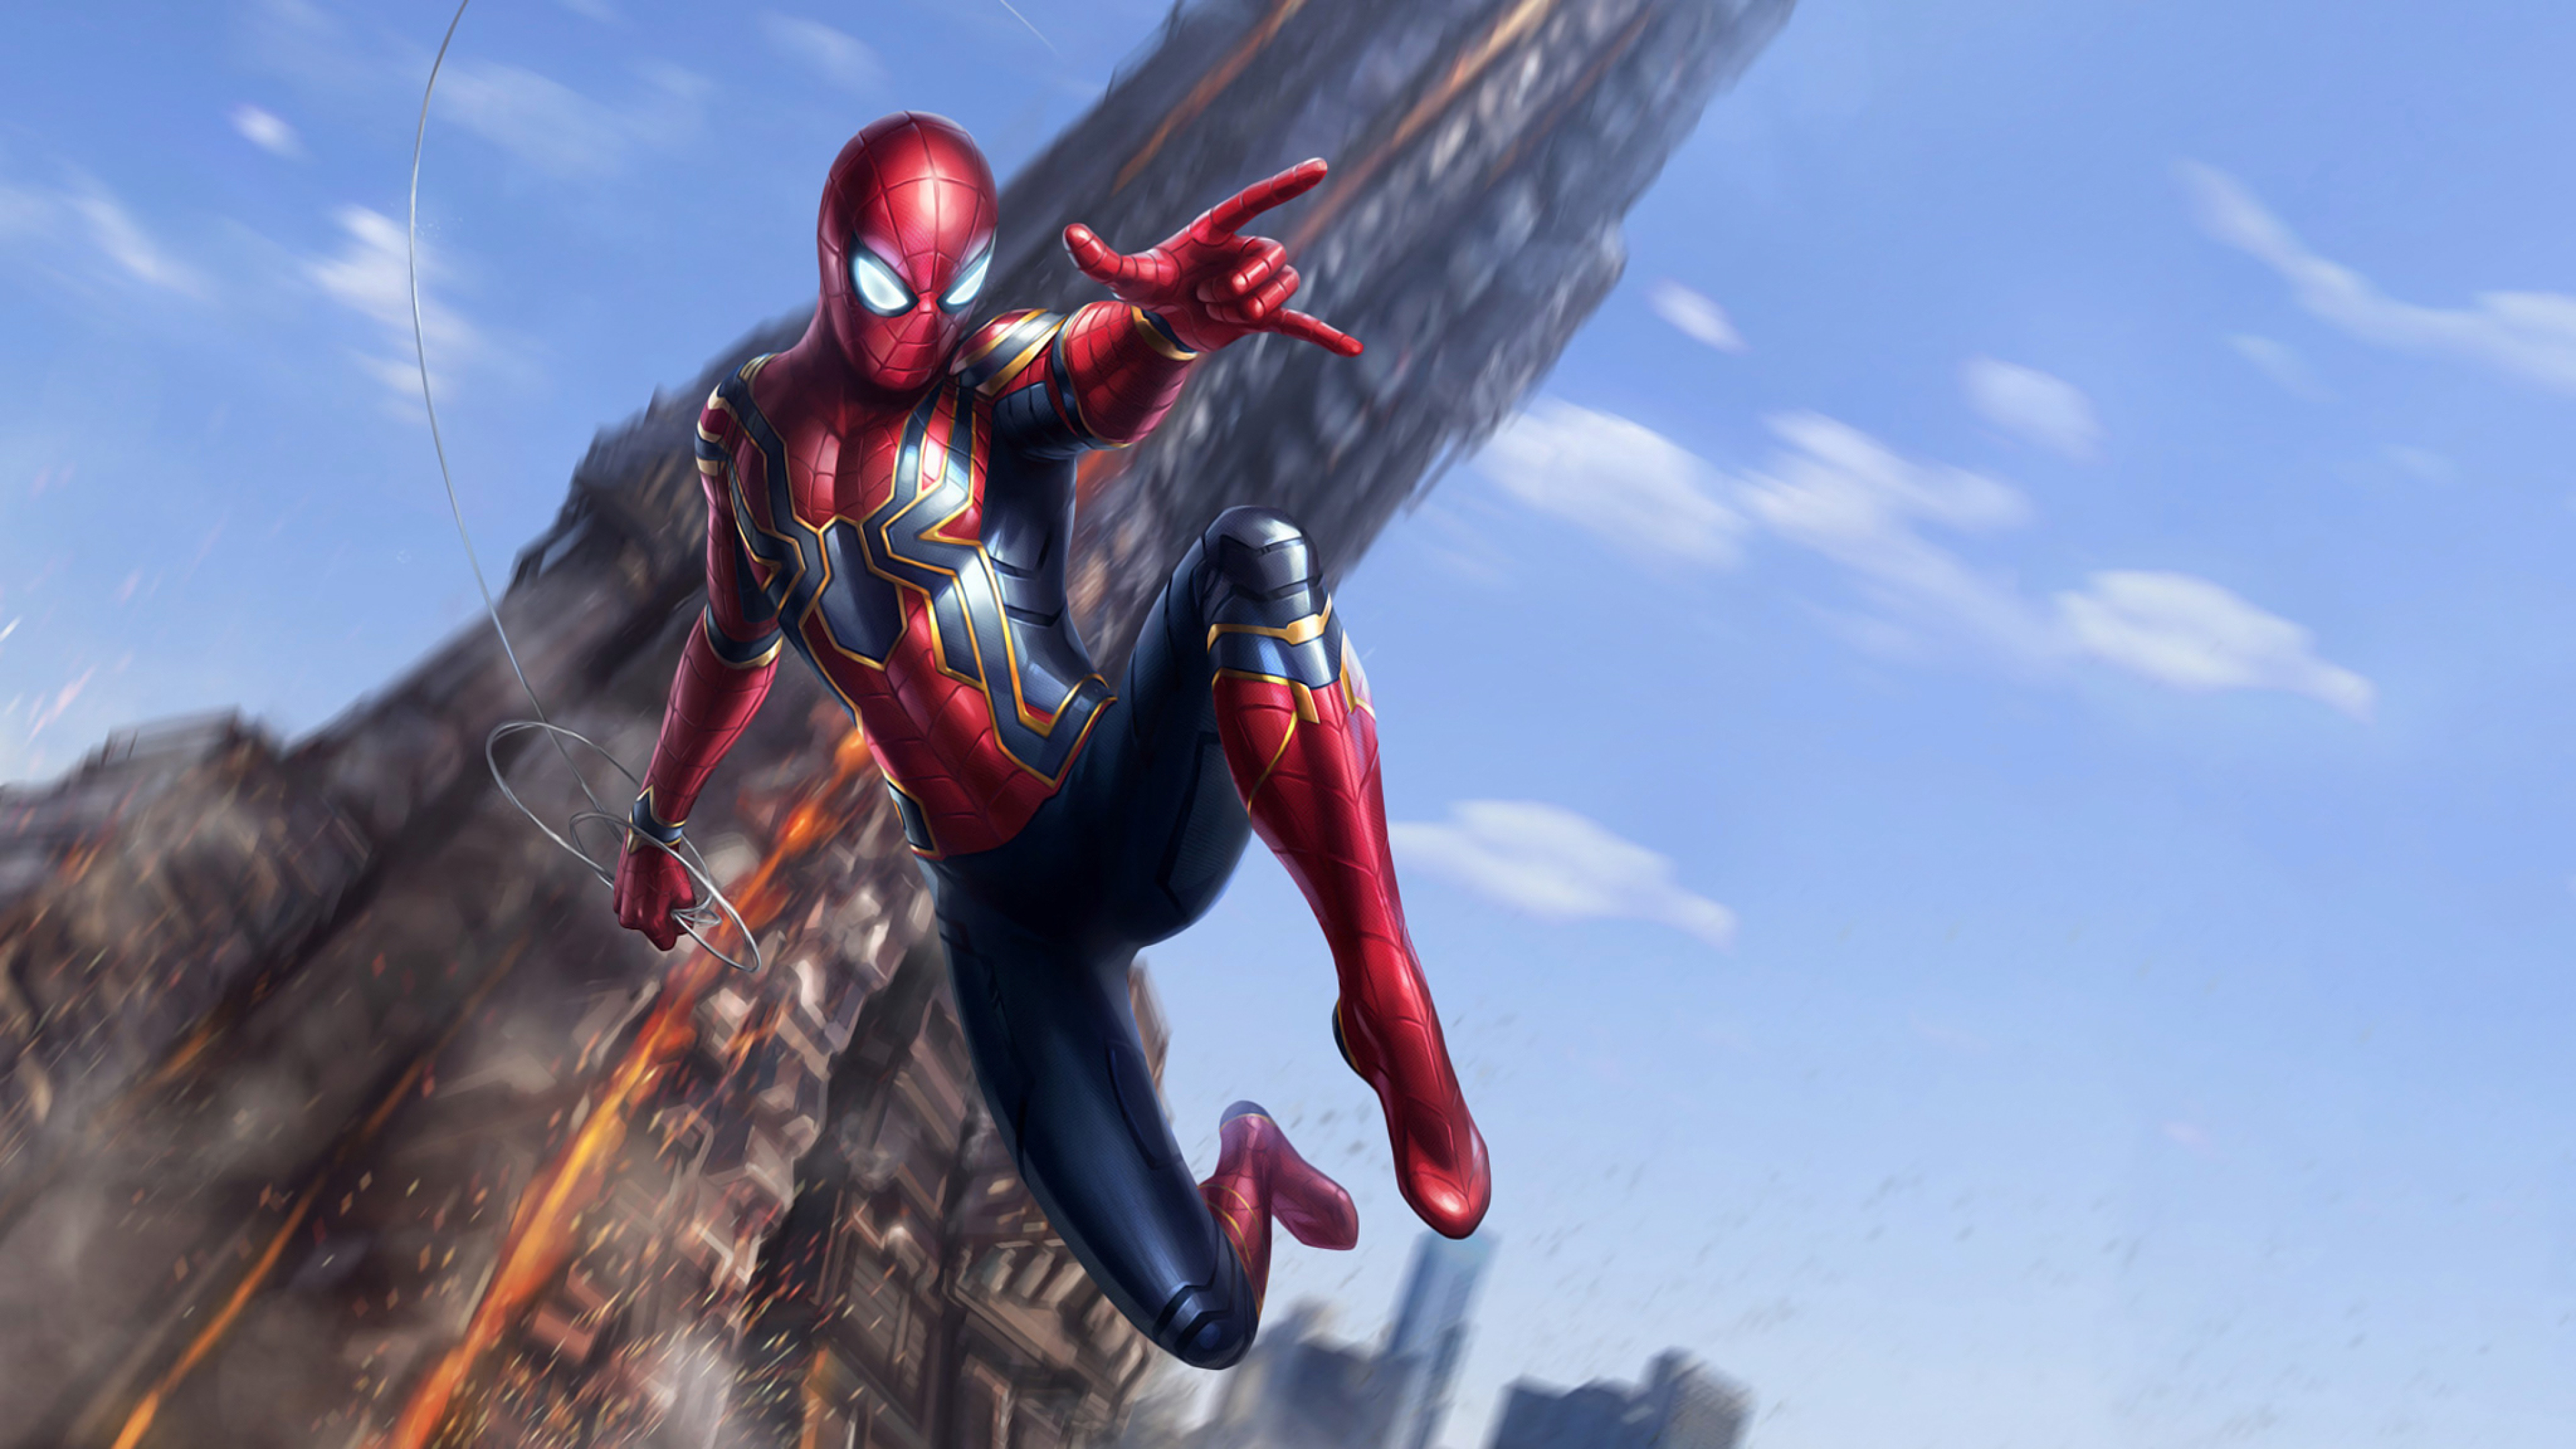 3840x2160 Iron Spider Avengers Infinity War 4k Wallpaper Hd